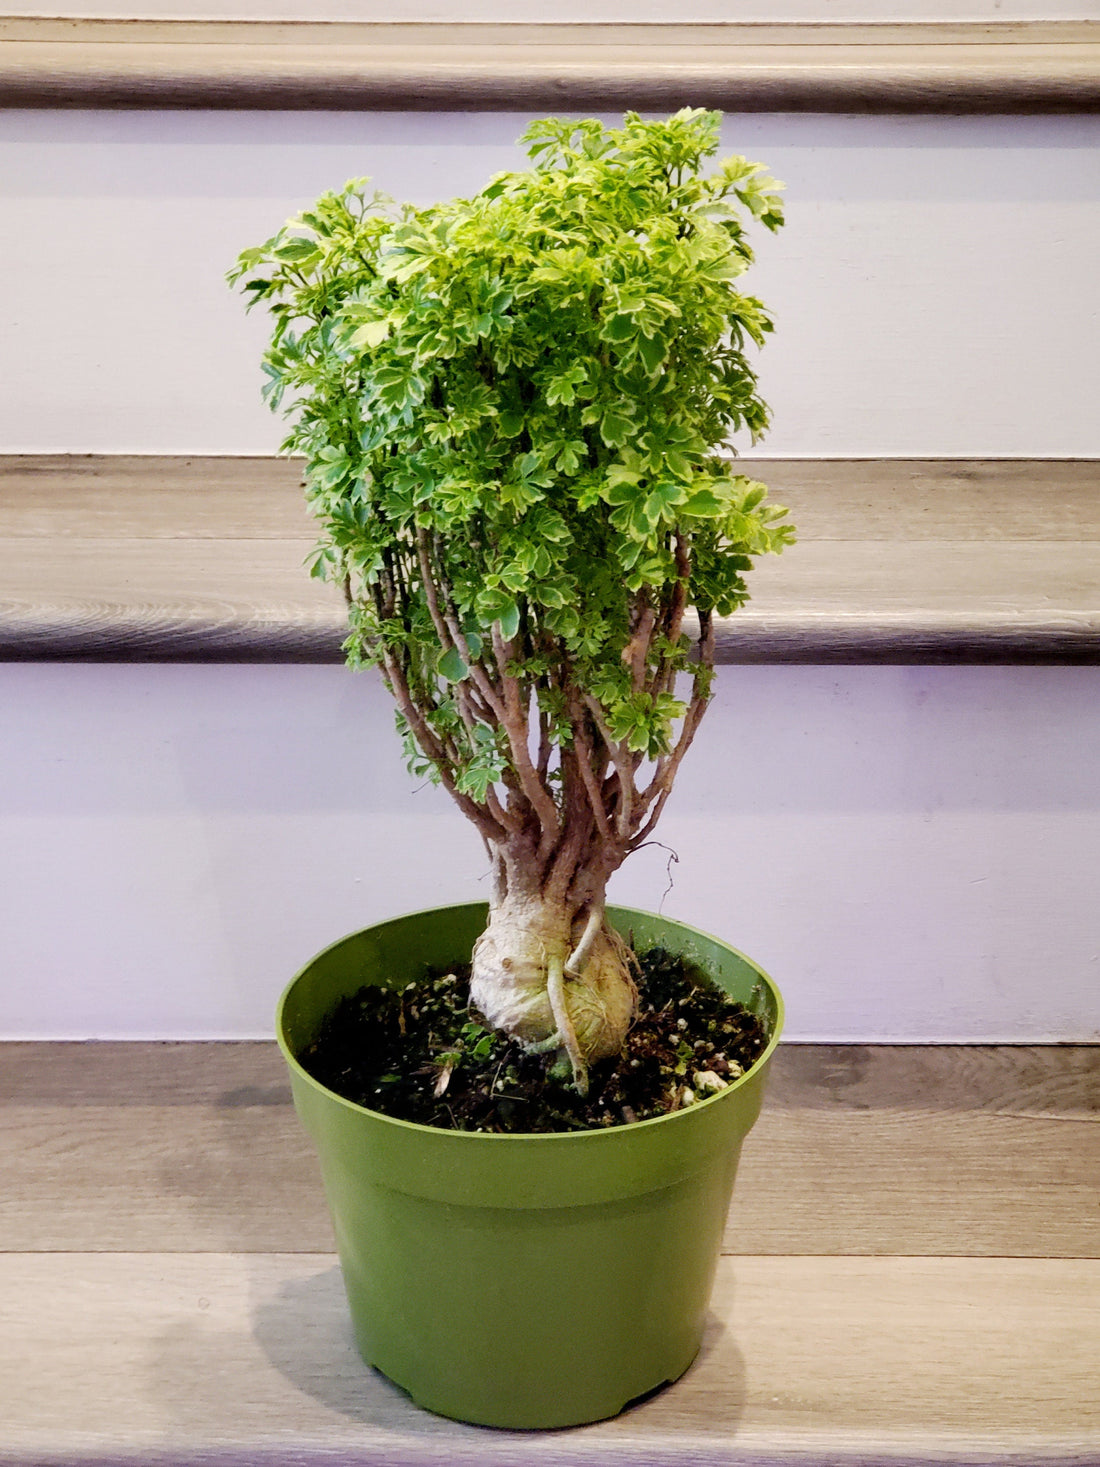 1 ft tall -Aralia Ming Gold Bonsai, Aralia Parsley- Stunning variegated bonsai tree